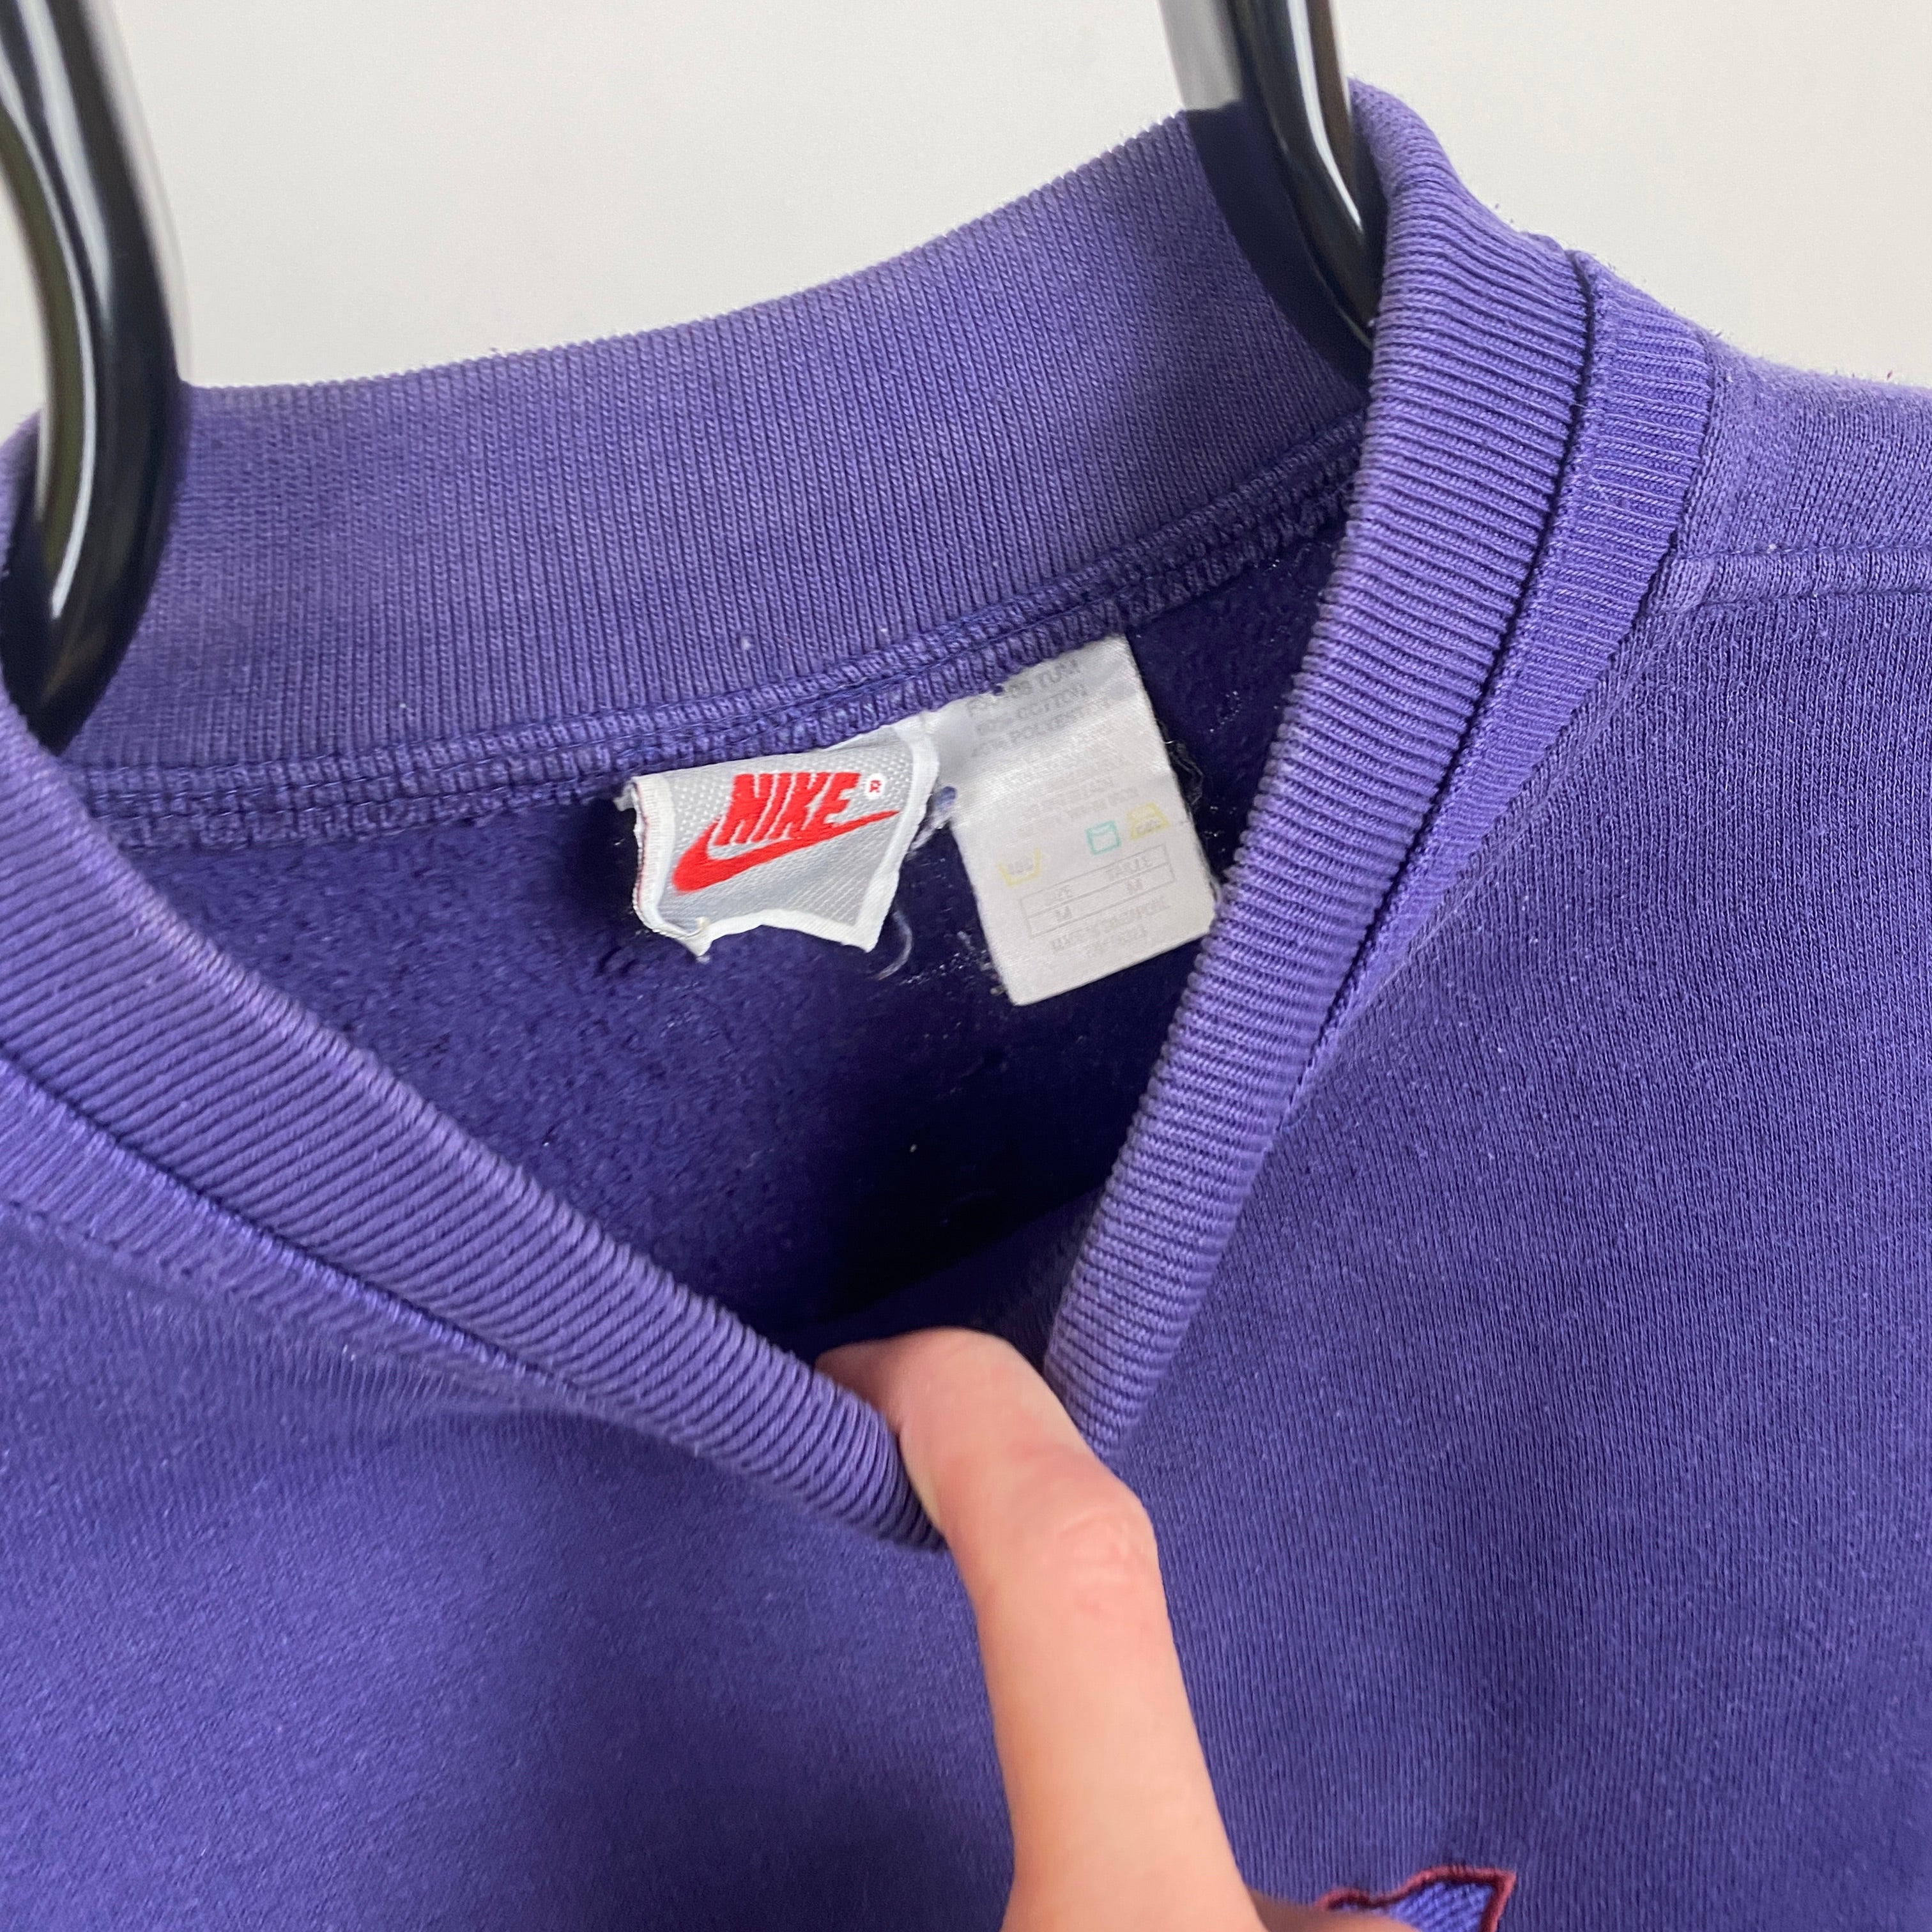 90s Nike Sweatshirt Purple Medium